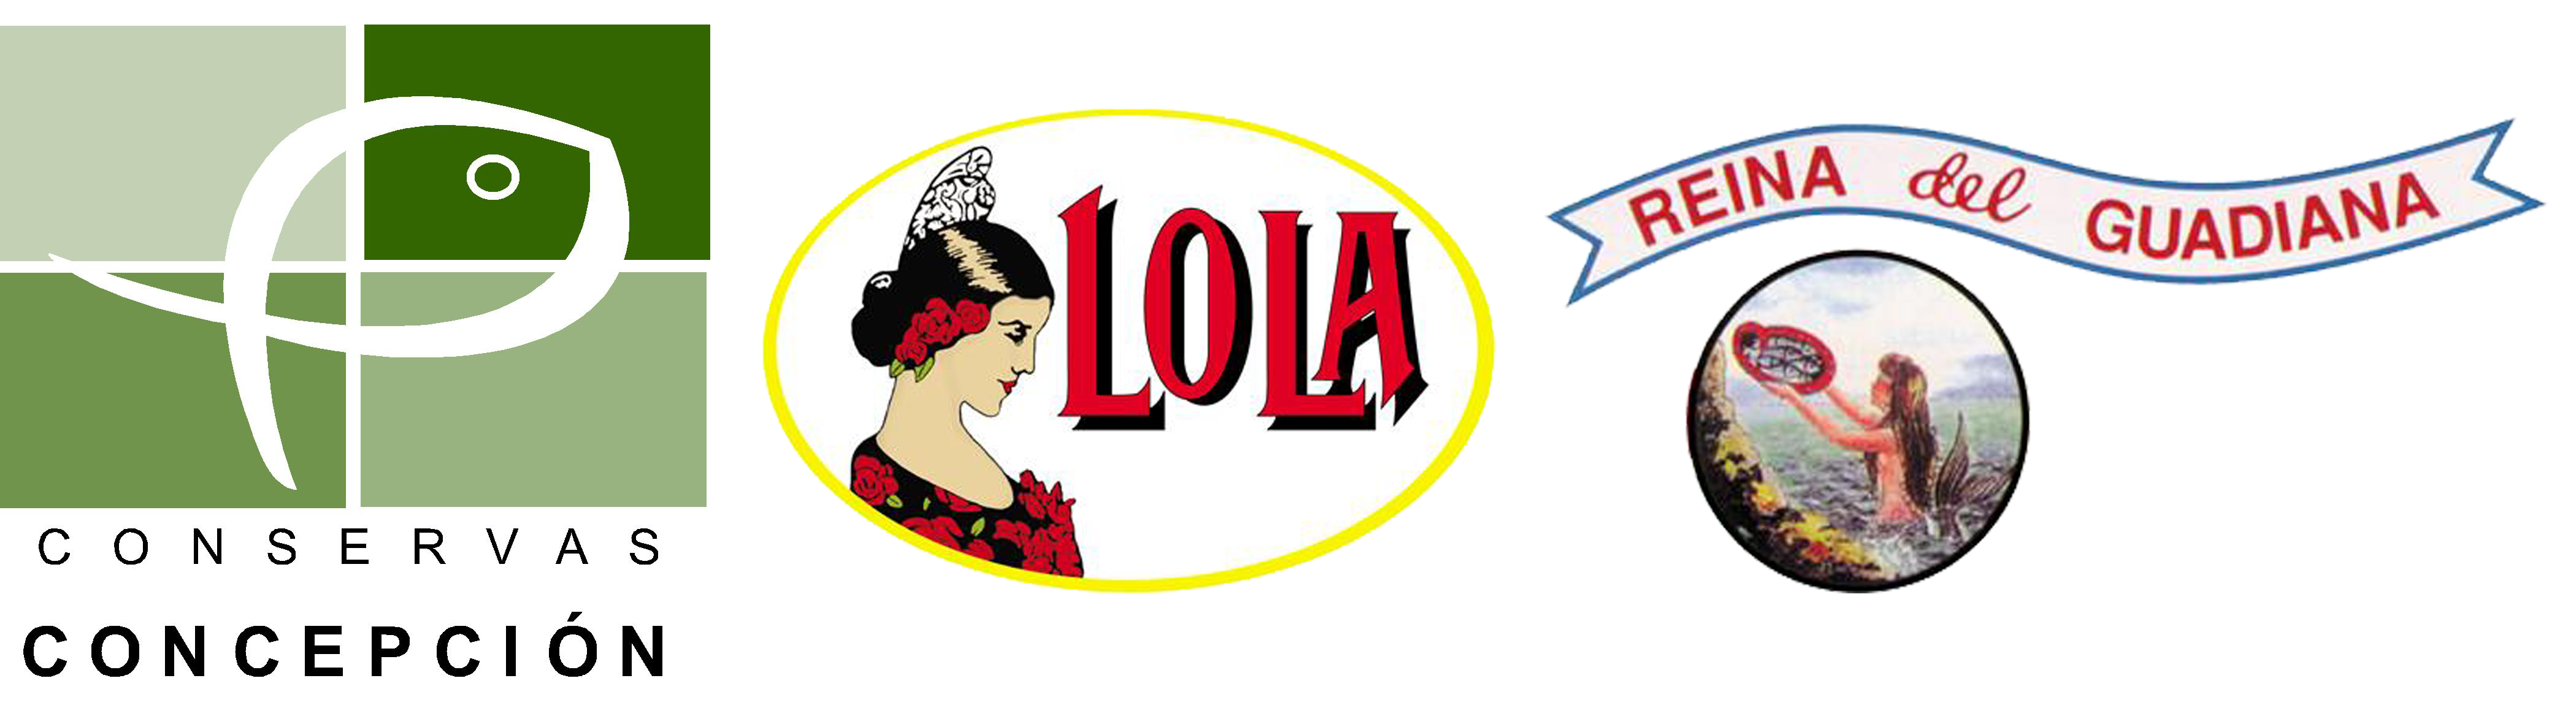 Conservas Concepcion - Lola